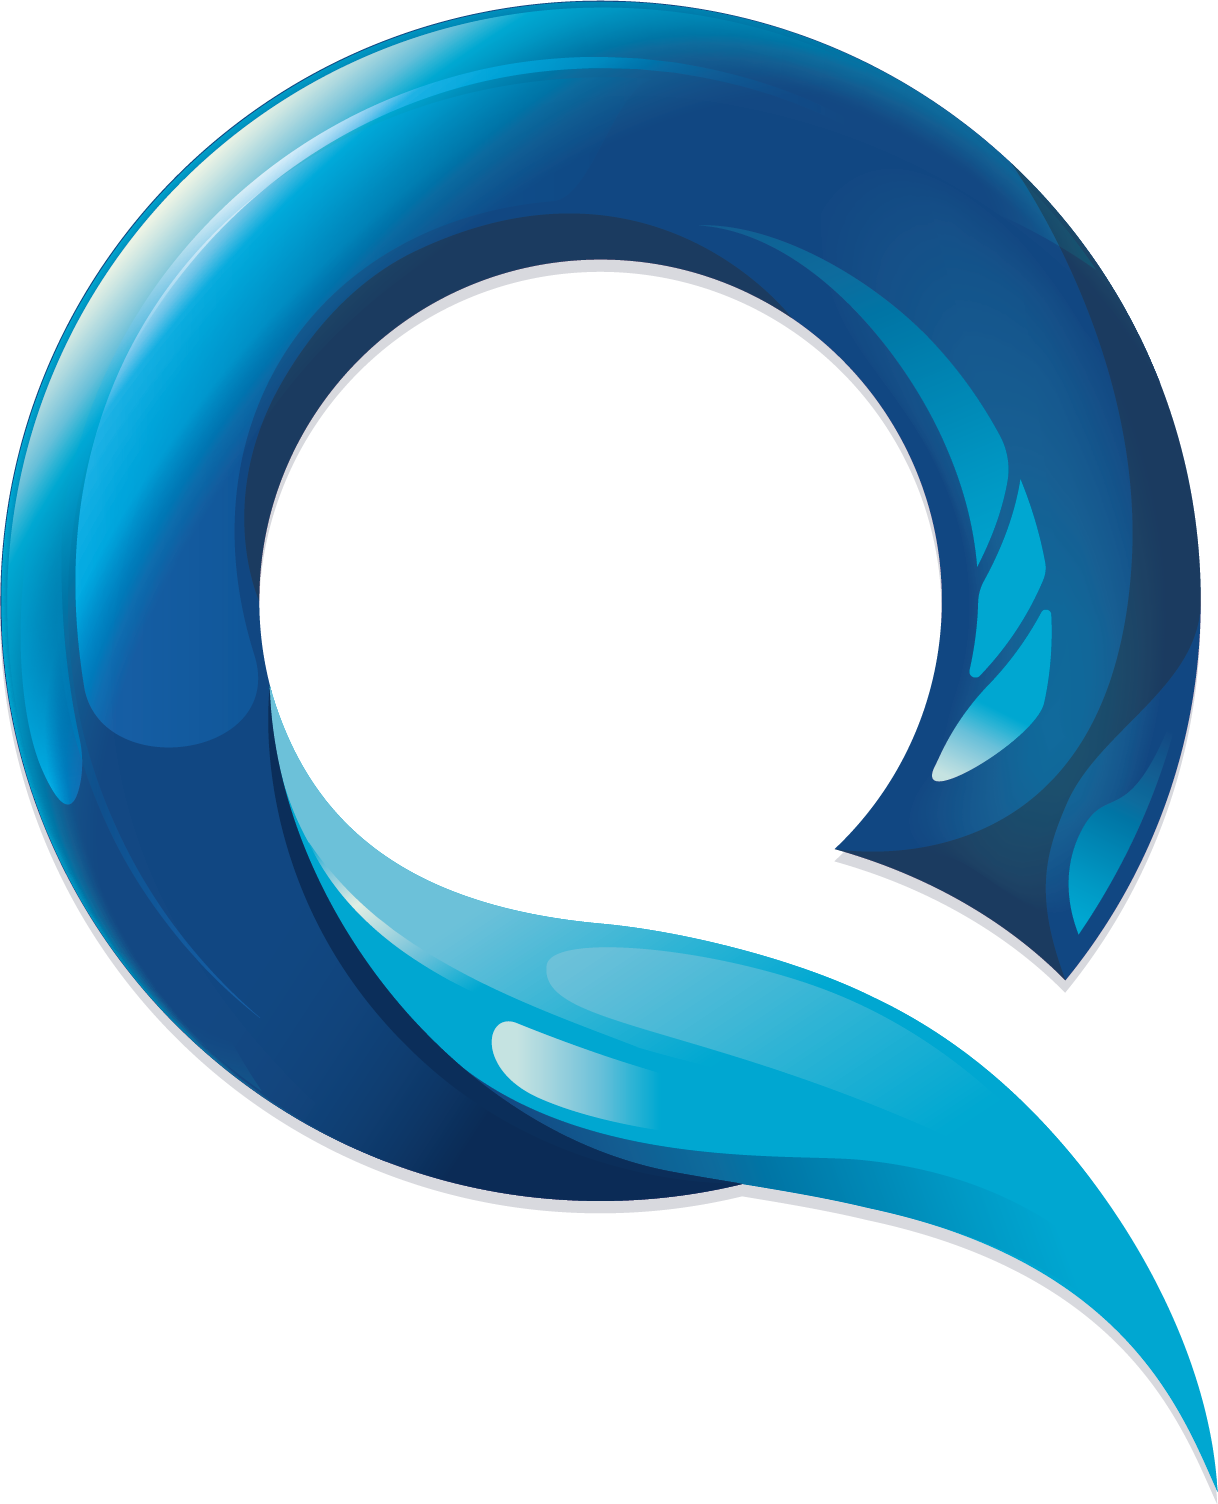 GitoQuest logo